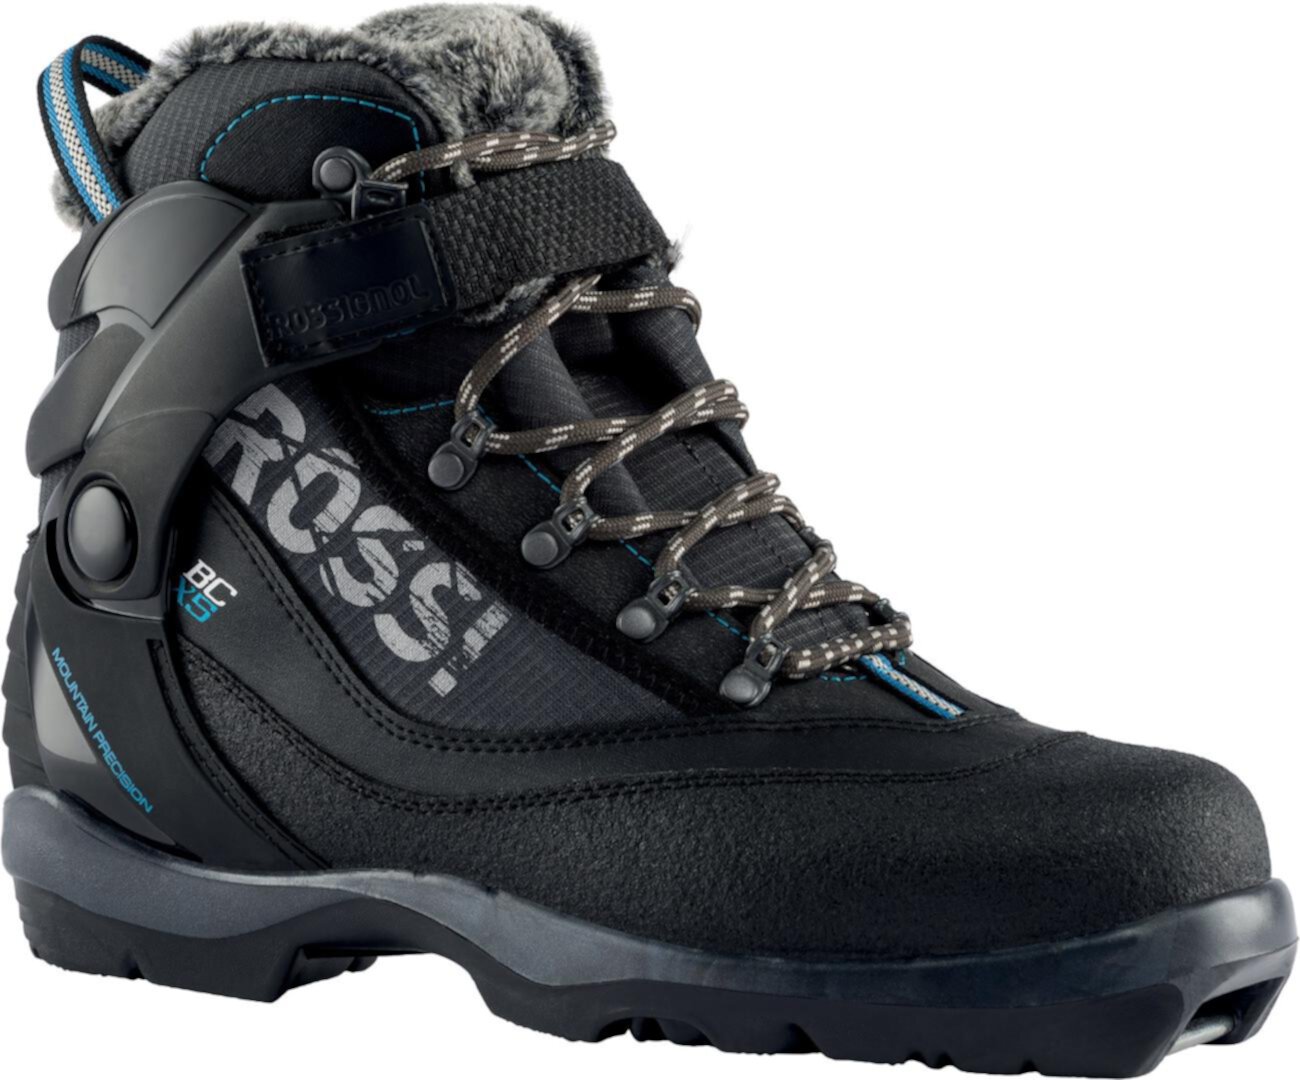 Ботинки для беговых лыж BC X5 FW — женские ROSSIGNOL